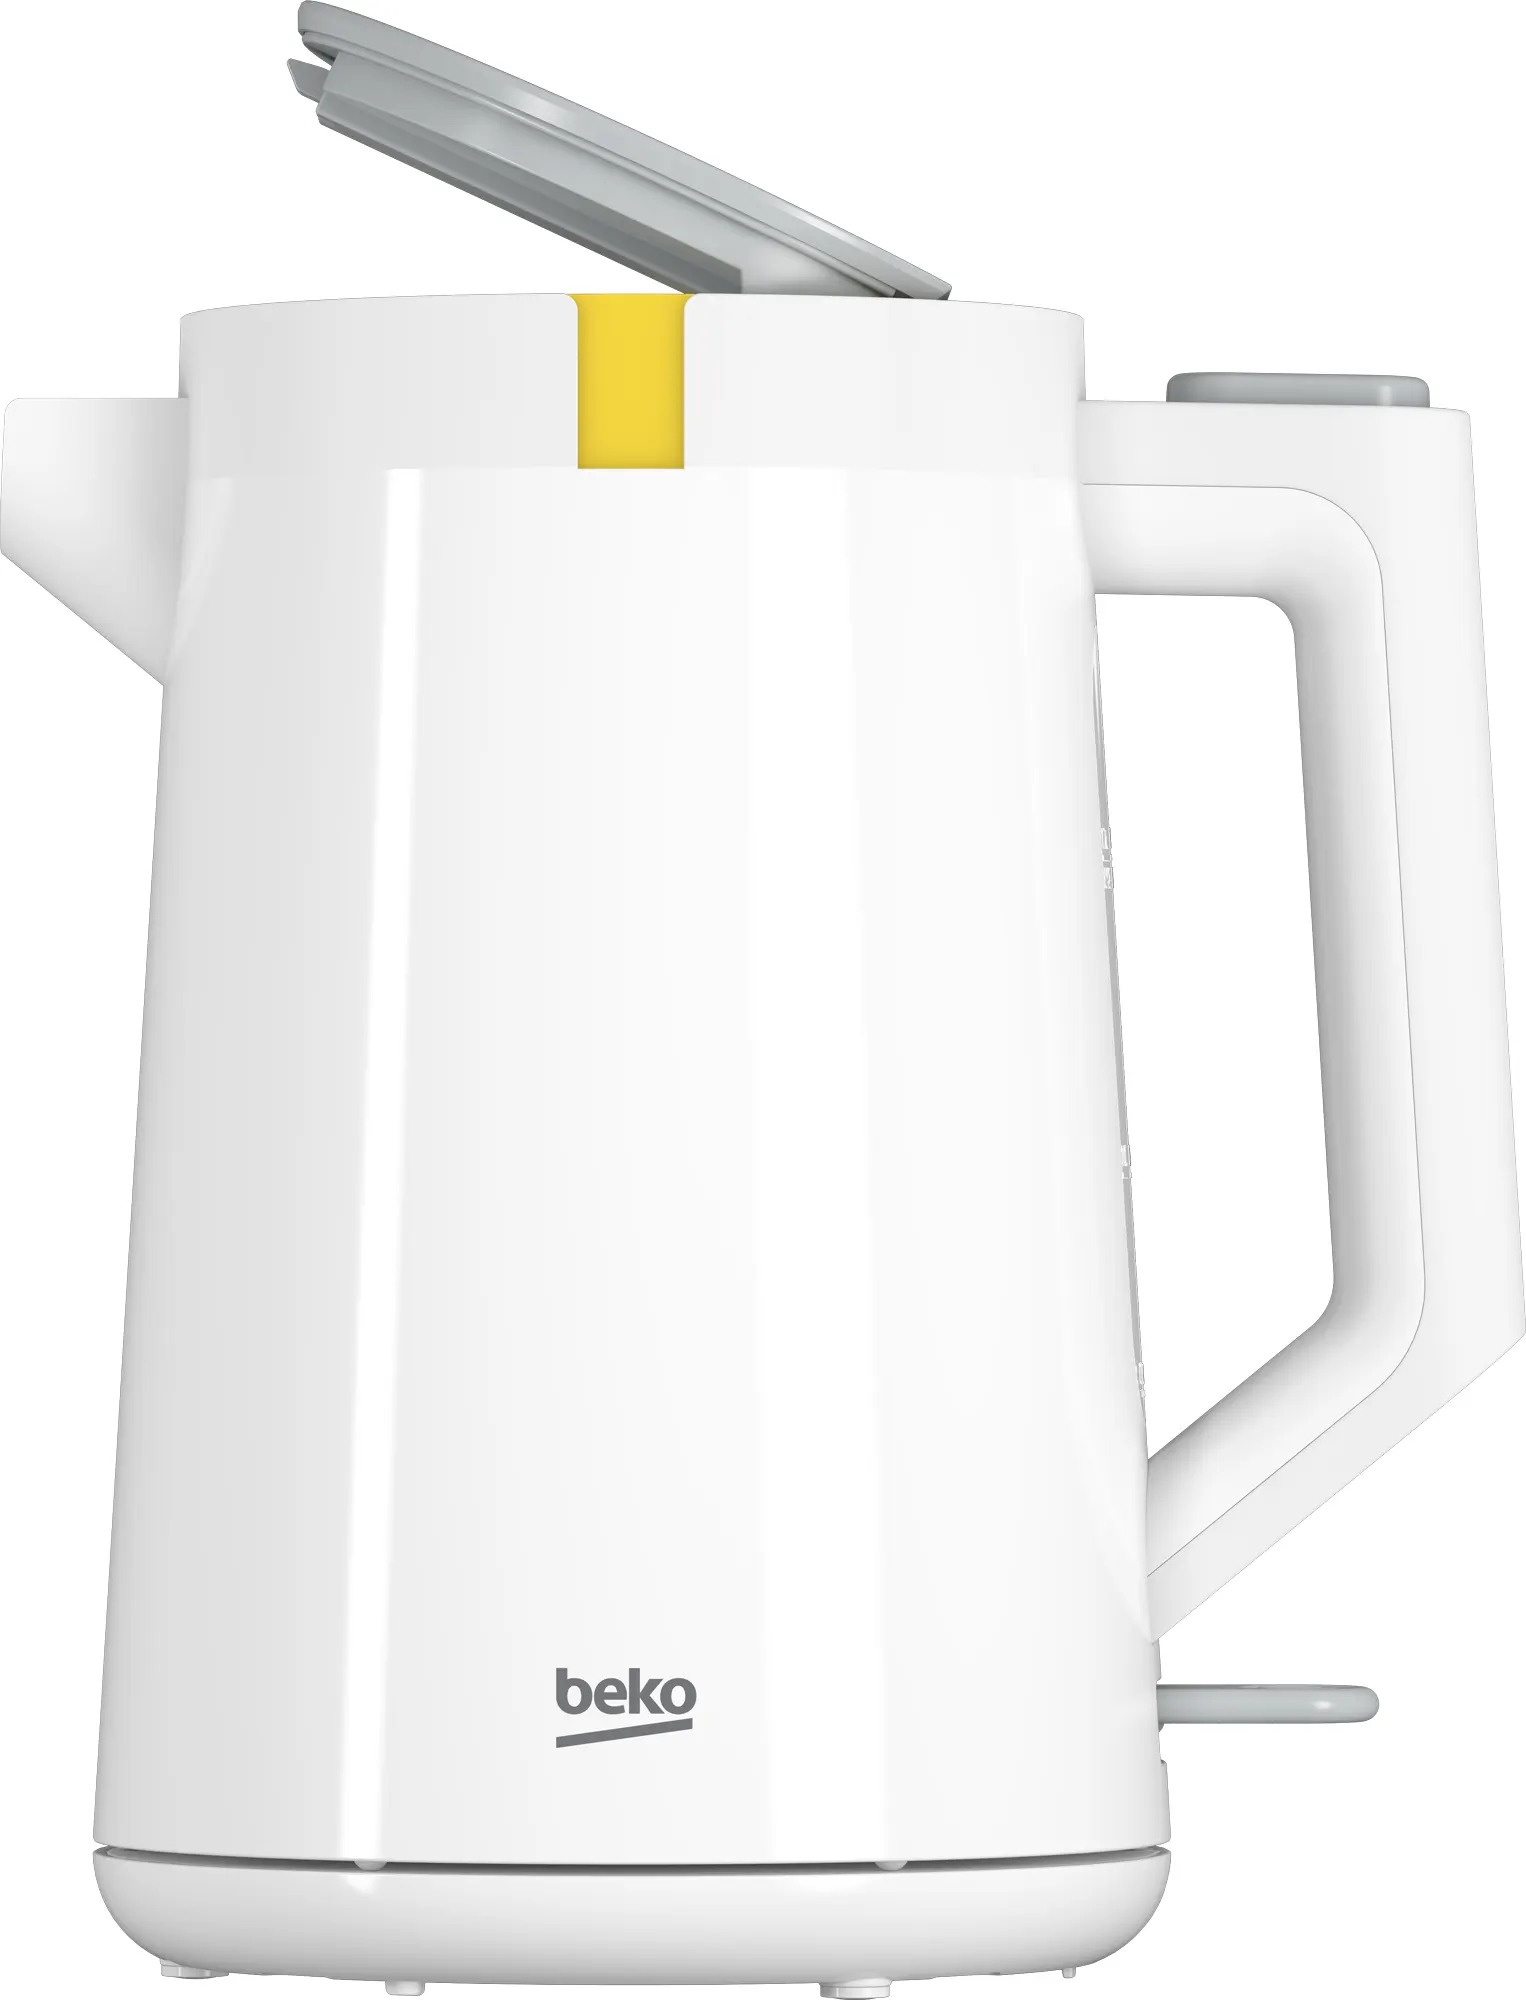 Beko Plastic Electric Water Kettle, 1.7 Liter, 2200 Watt, White, WKM 4215 W